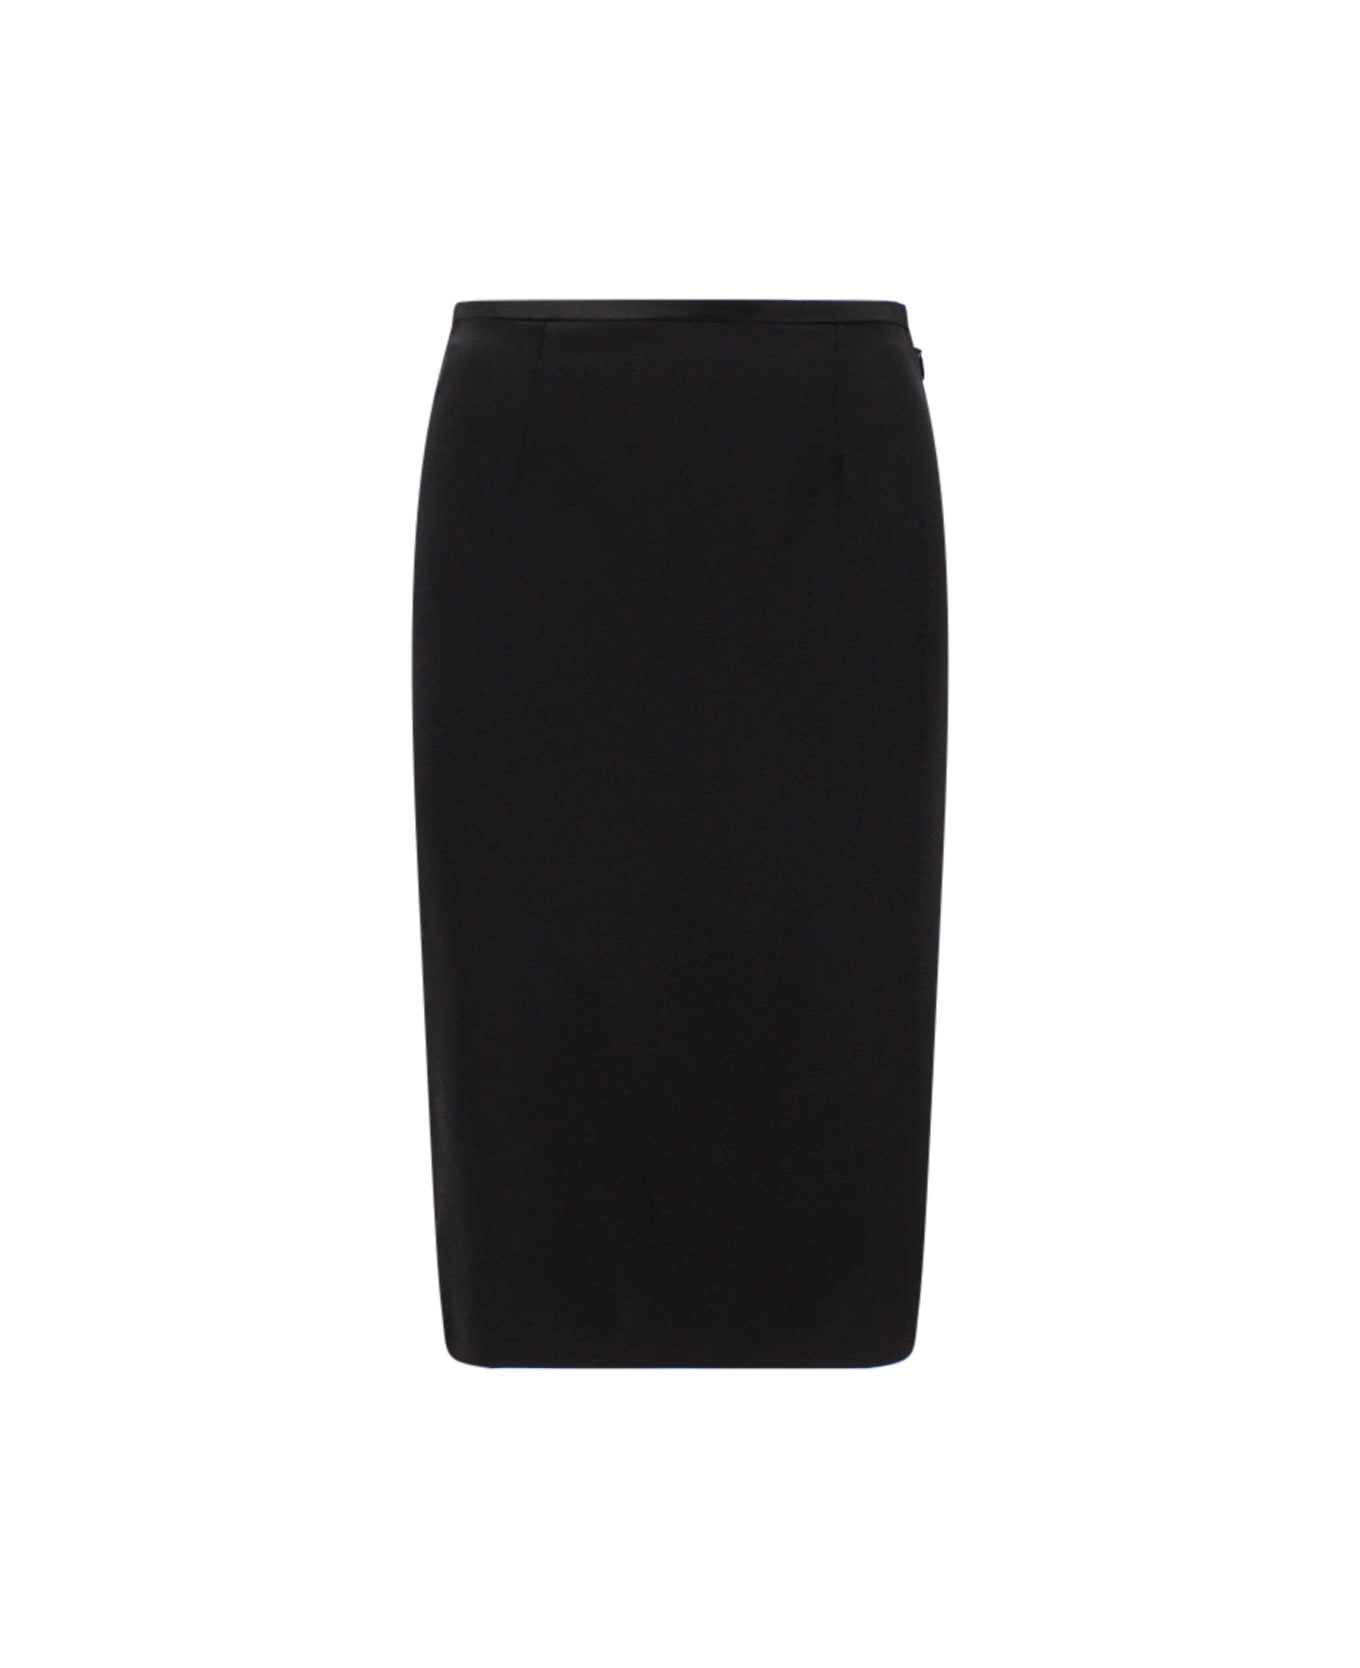 Saint Laurent Skirt - Black スカート